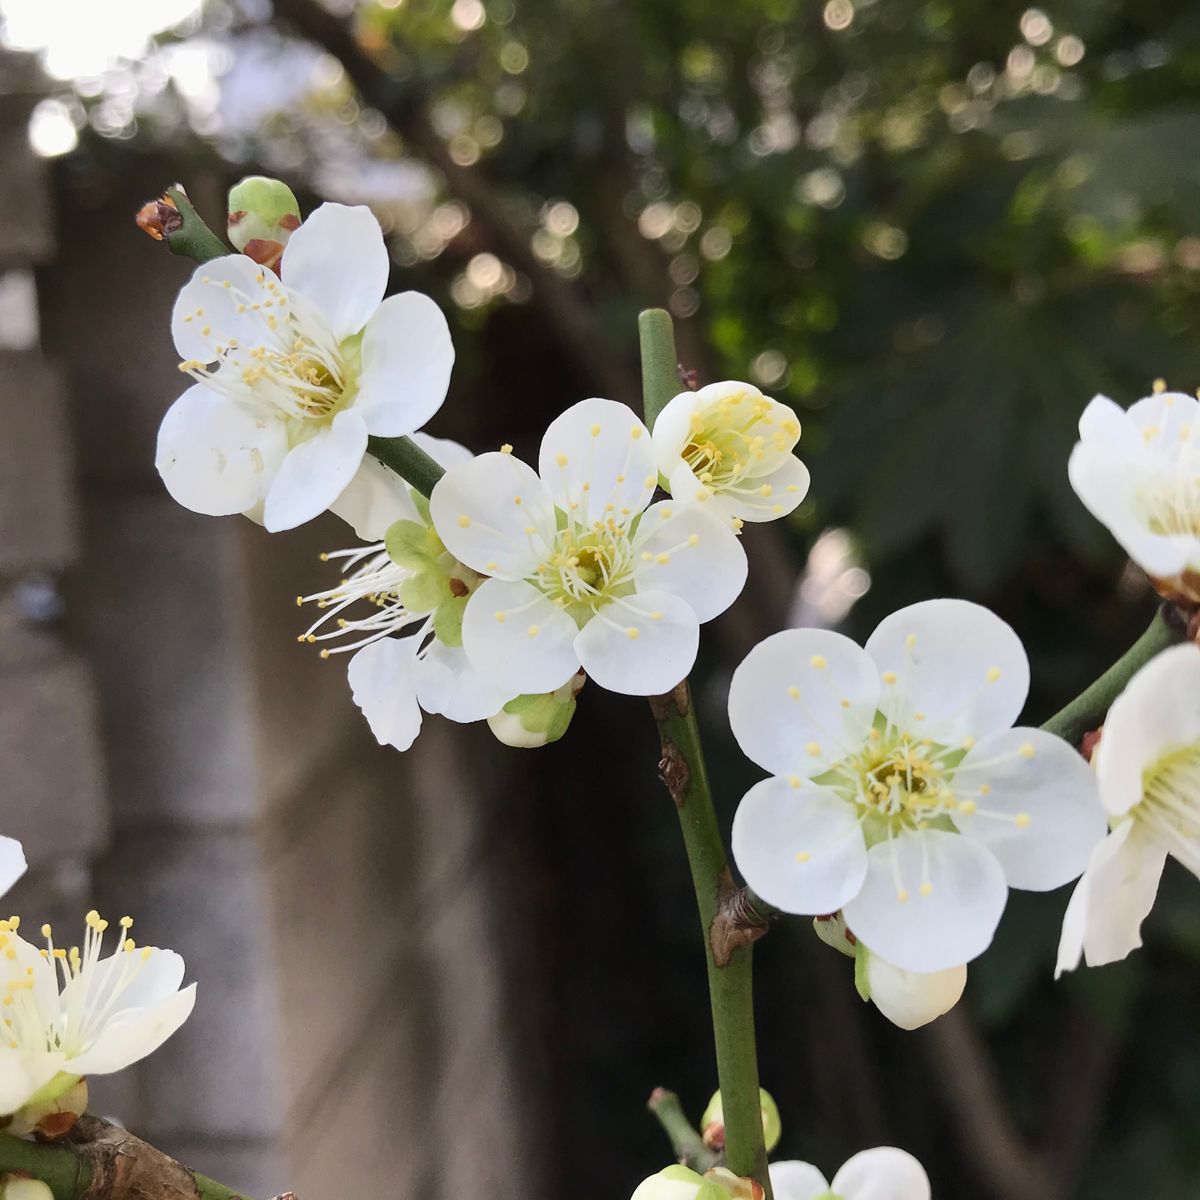 2021.2.13  今年も庭の梅が咲き始めました🌸 庭に出ると優しく甘い香りが風に乗ってふ